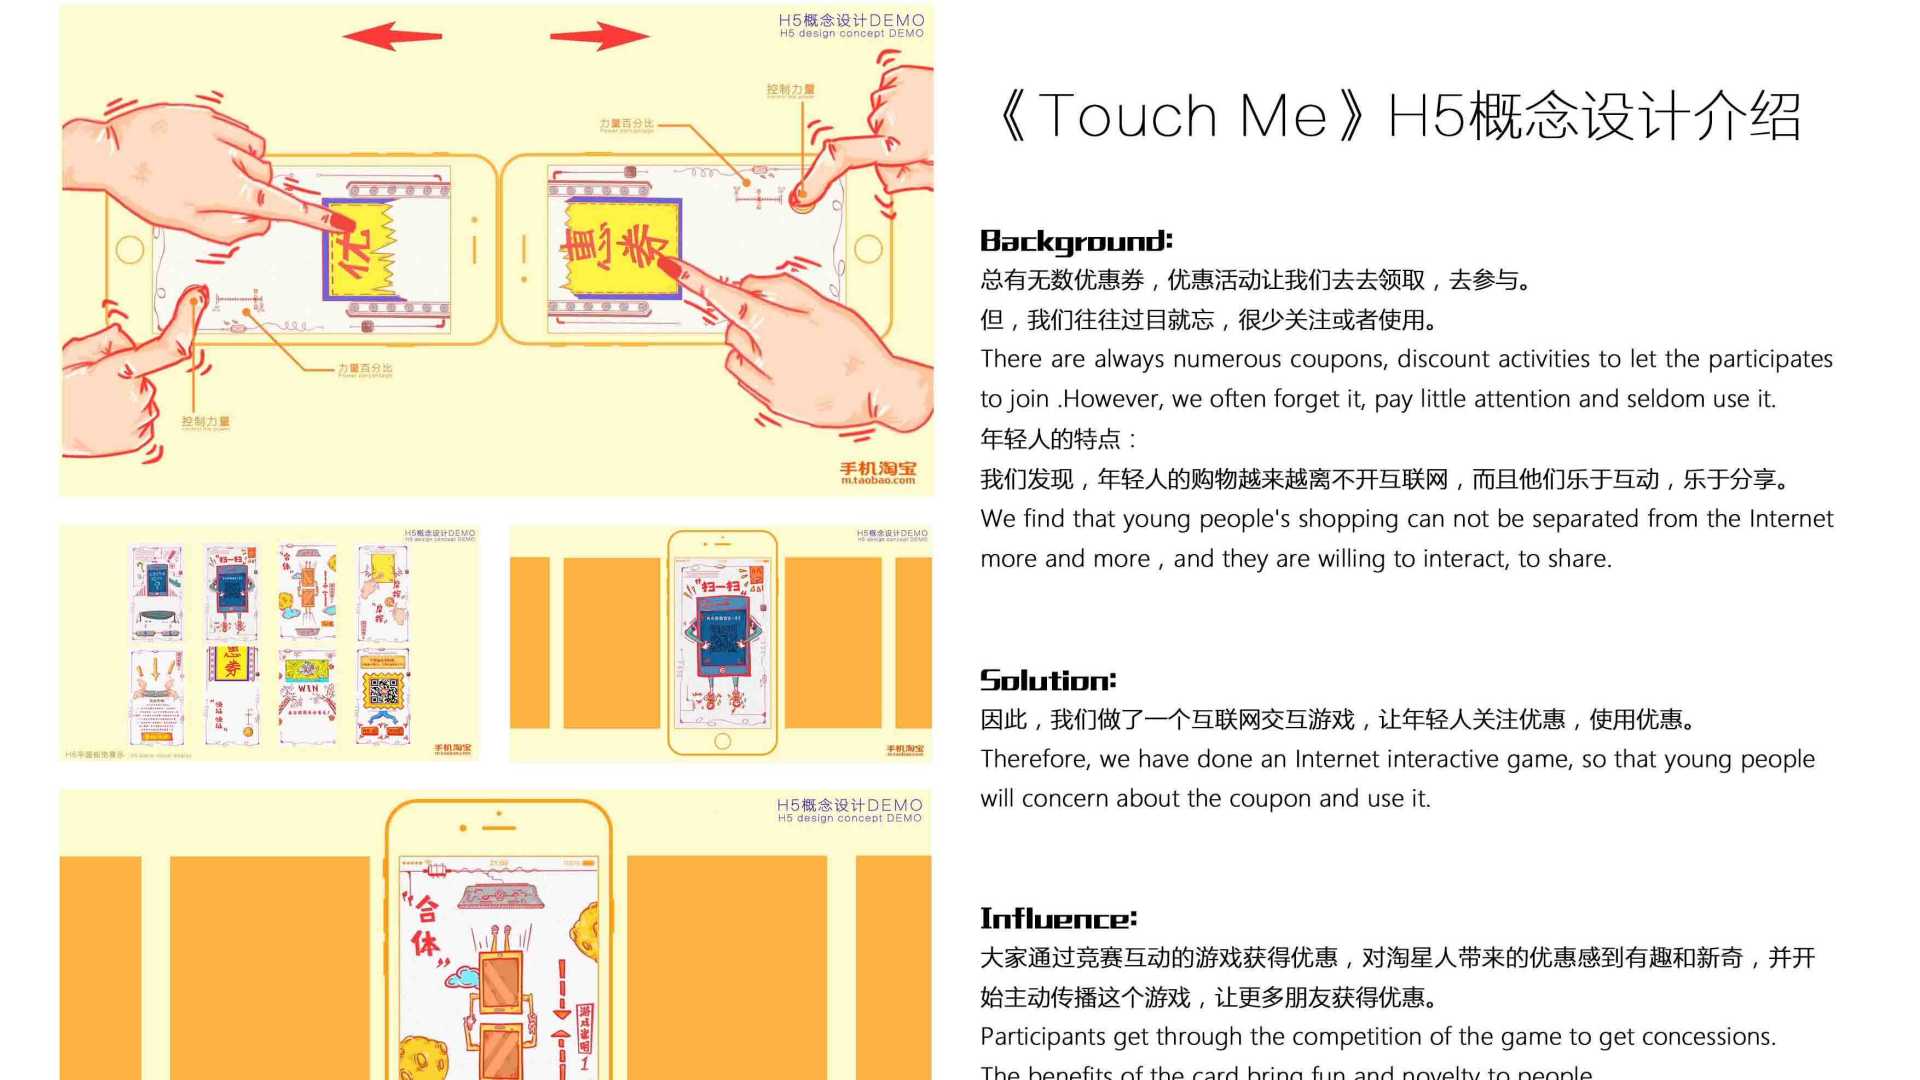 淘星人h5概念视频《Touch Me》